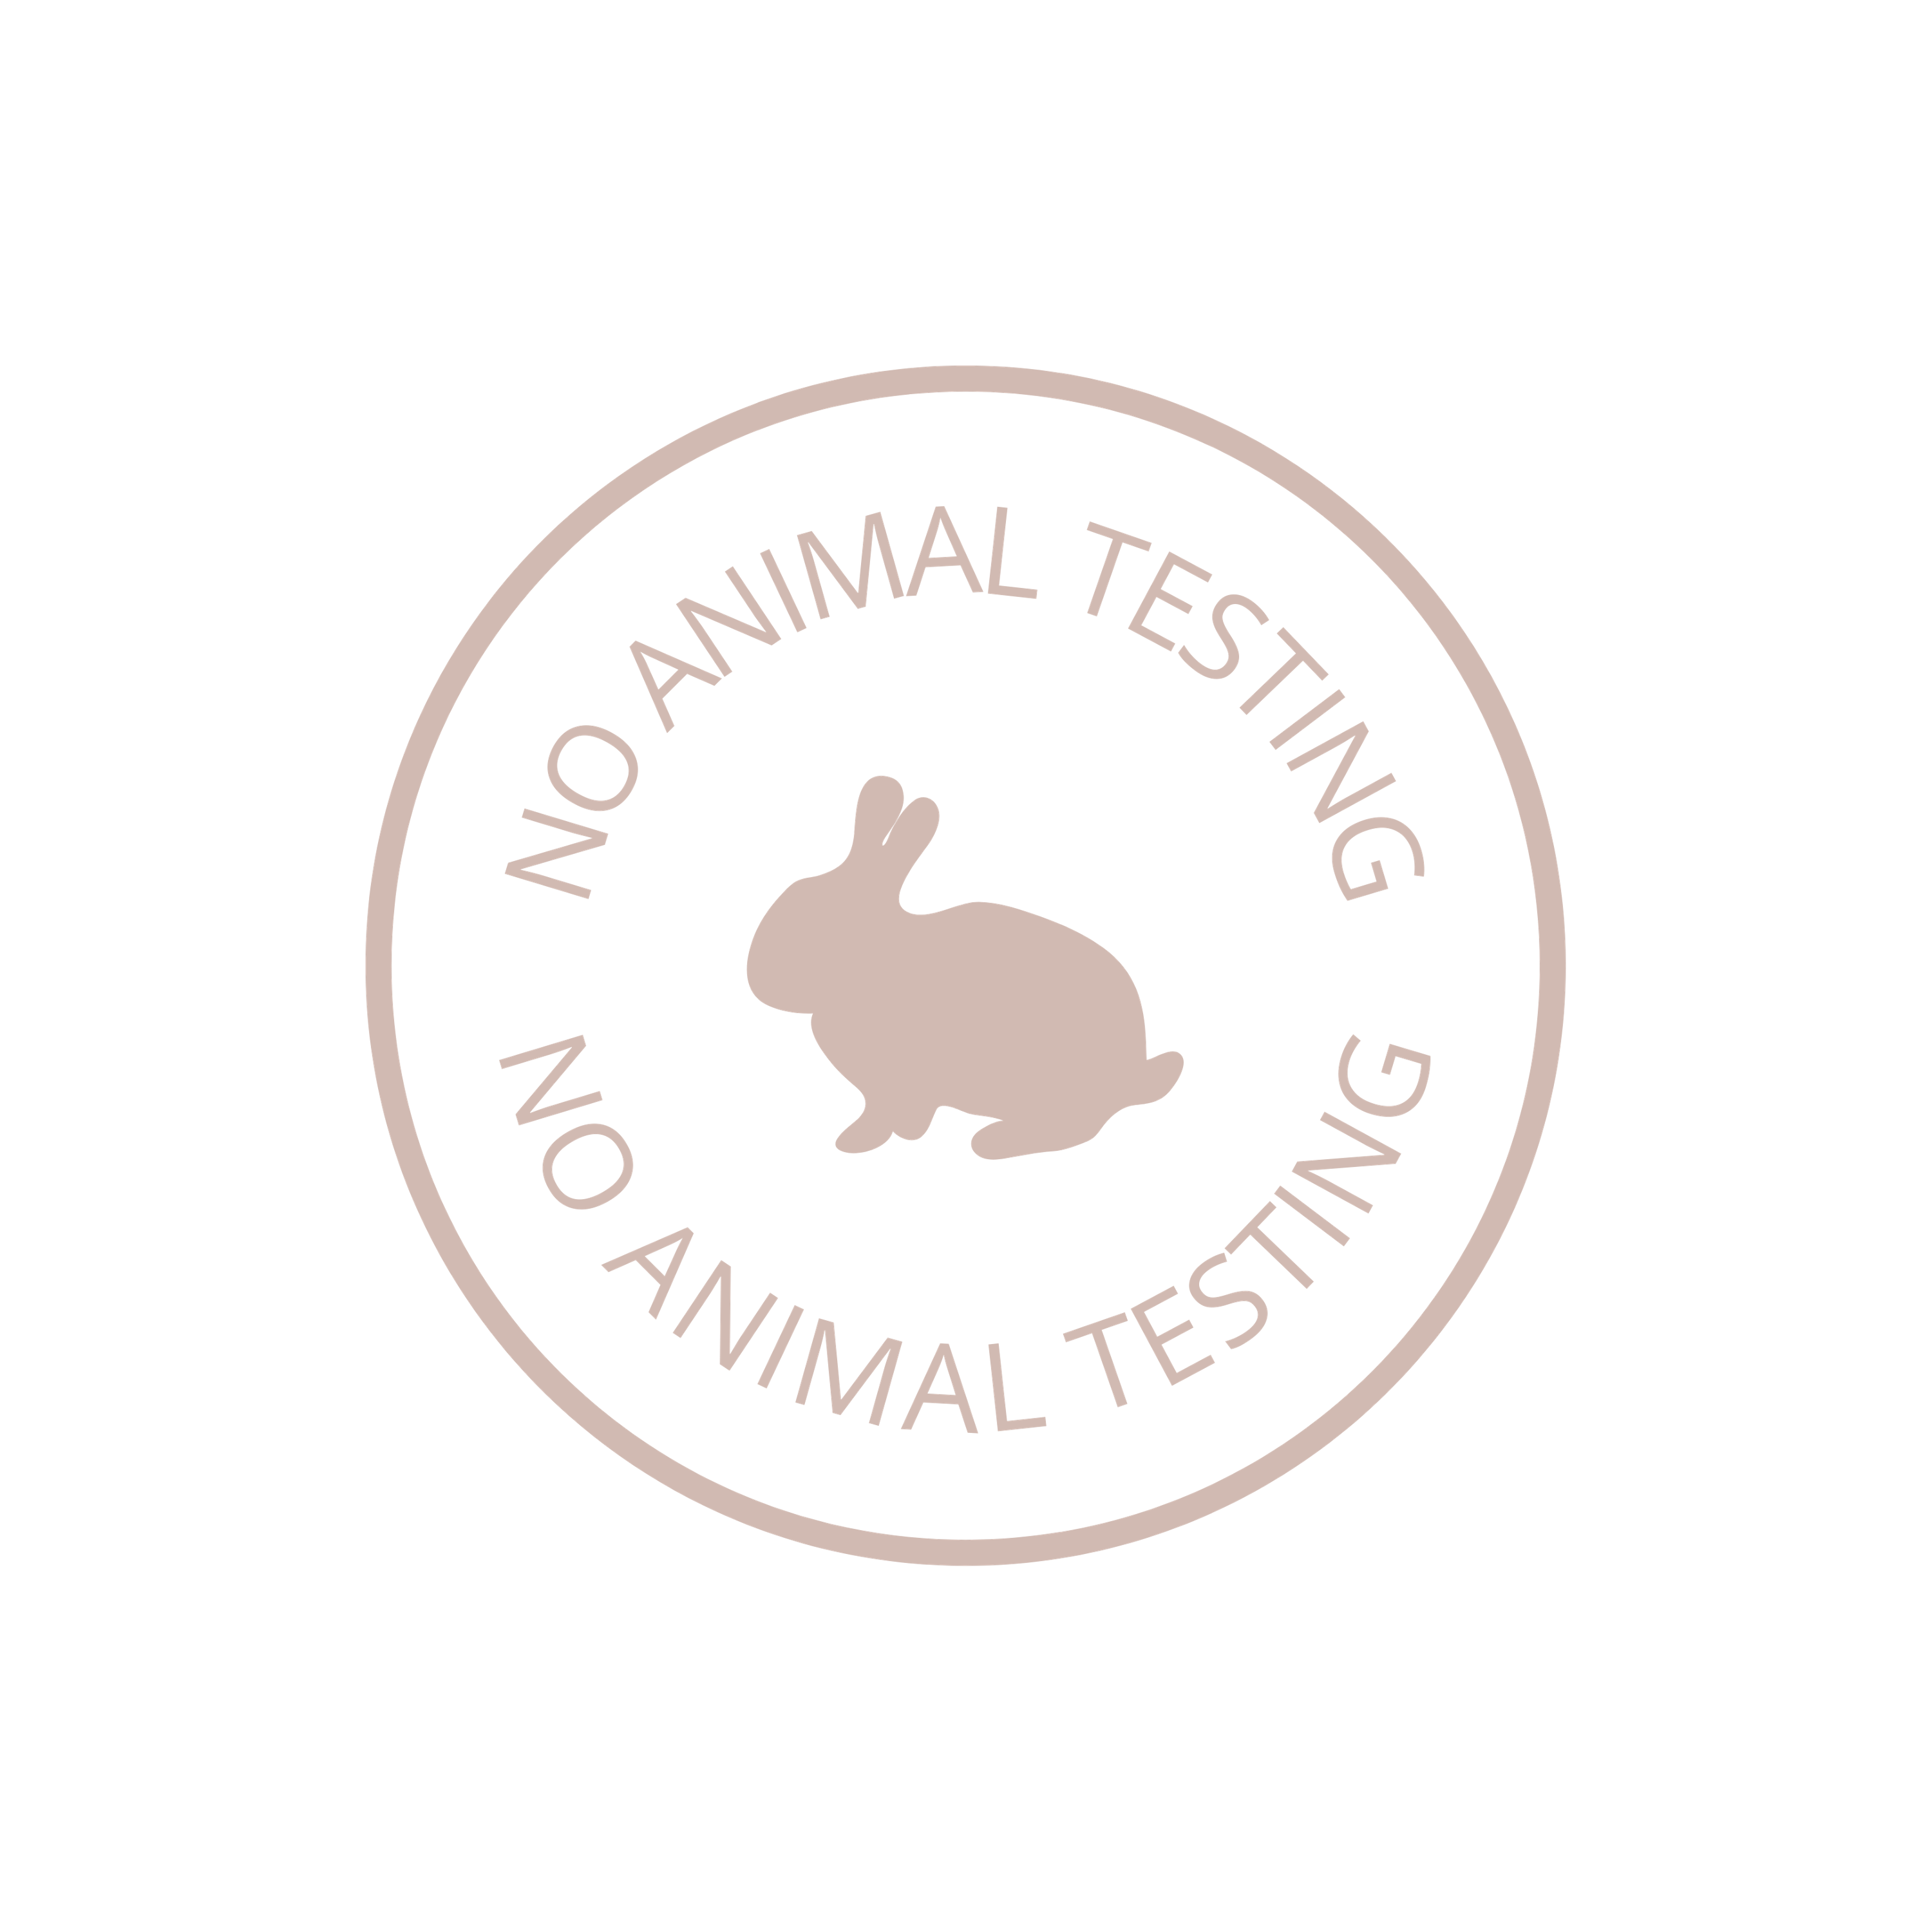 No animal testing logo